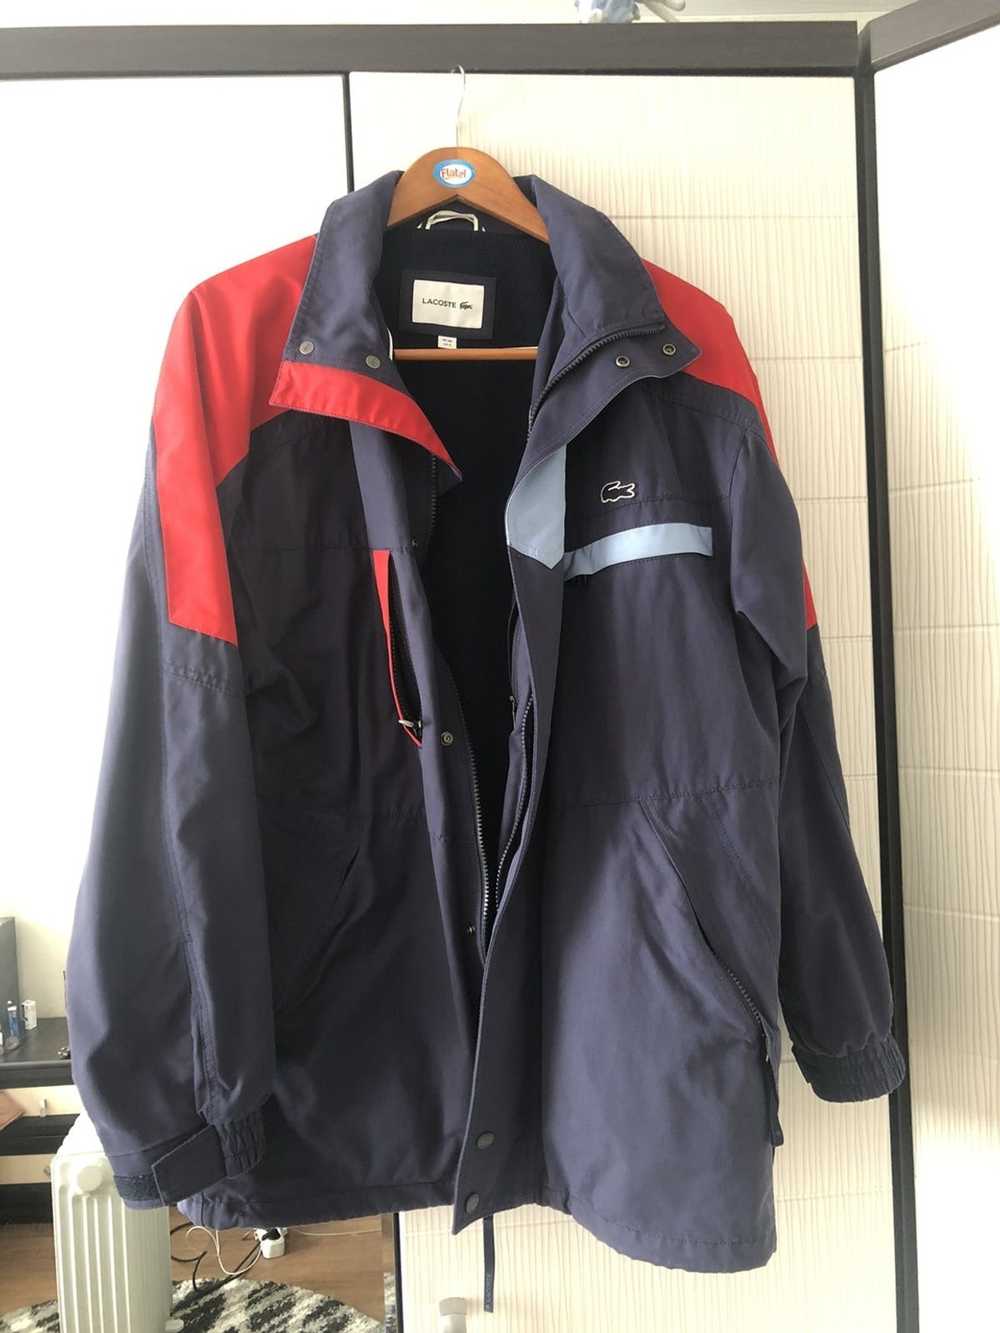 Lacoste Lacoste jacket - image 1